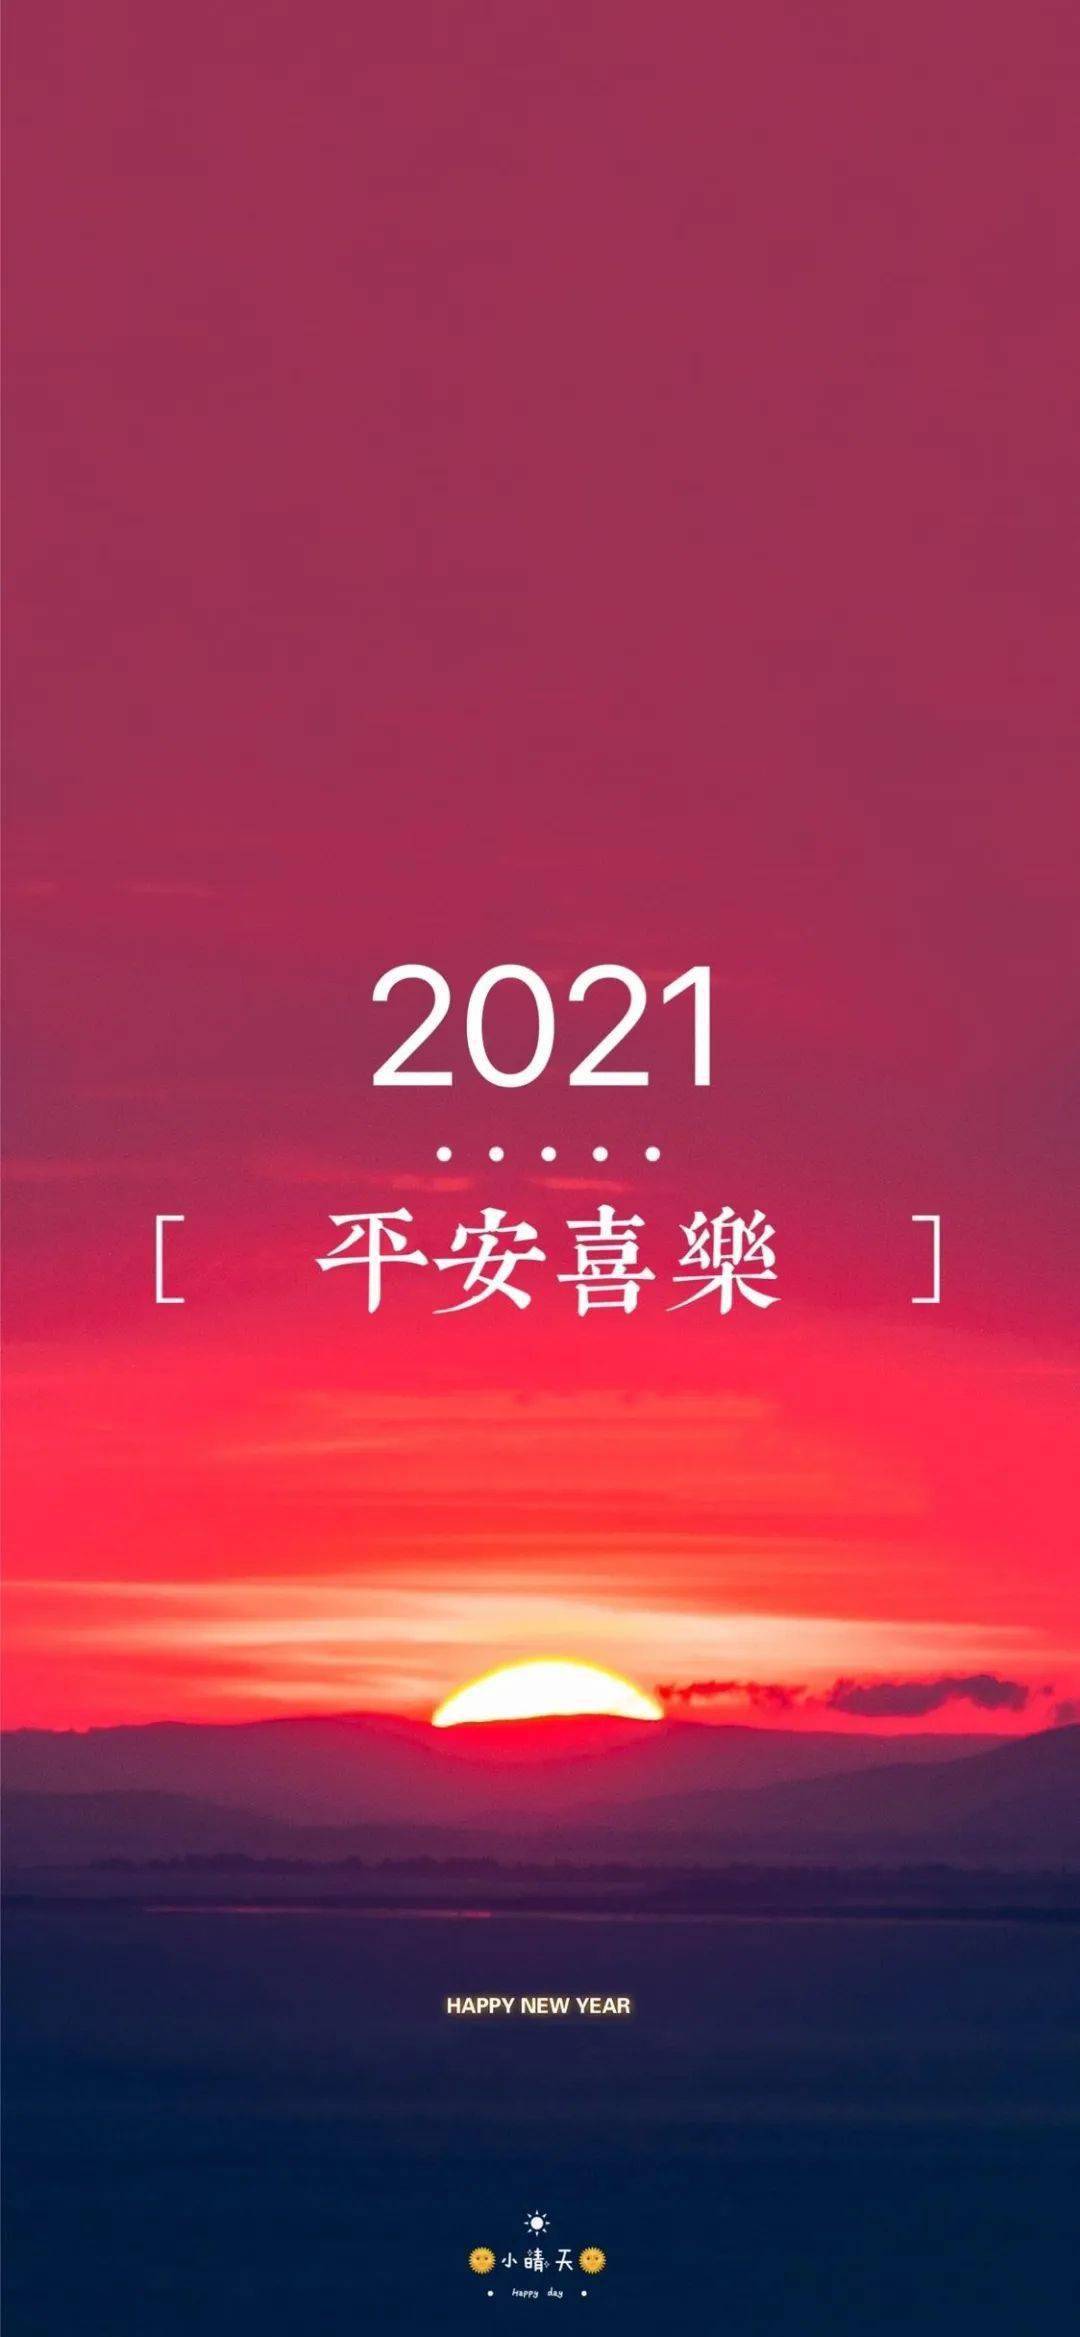 2021年图片手机壁纸图片